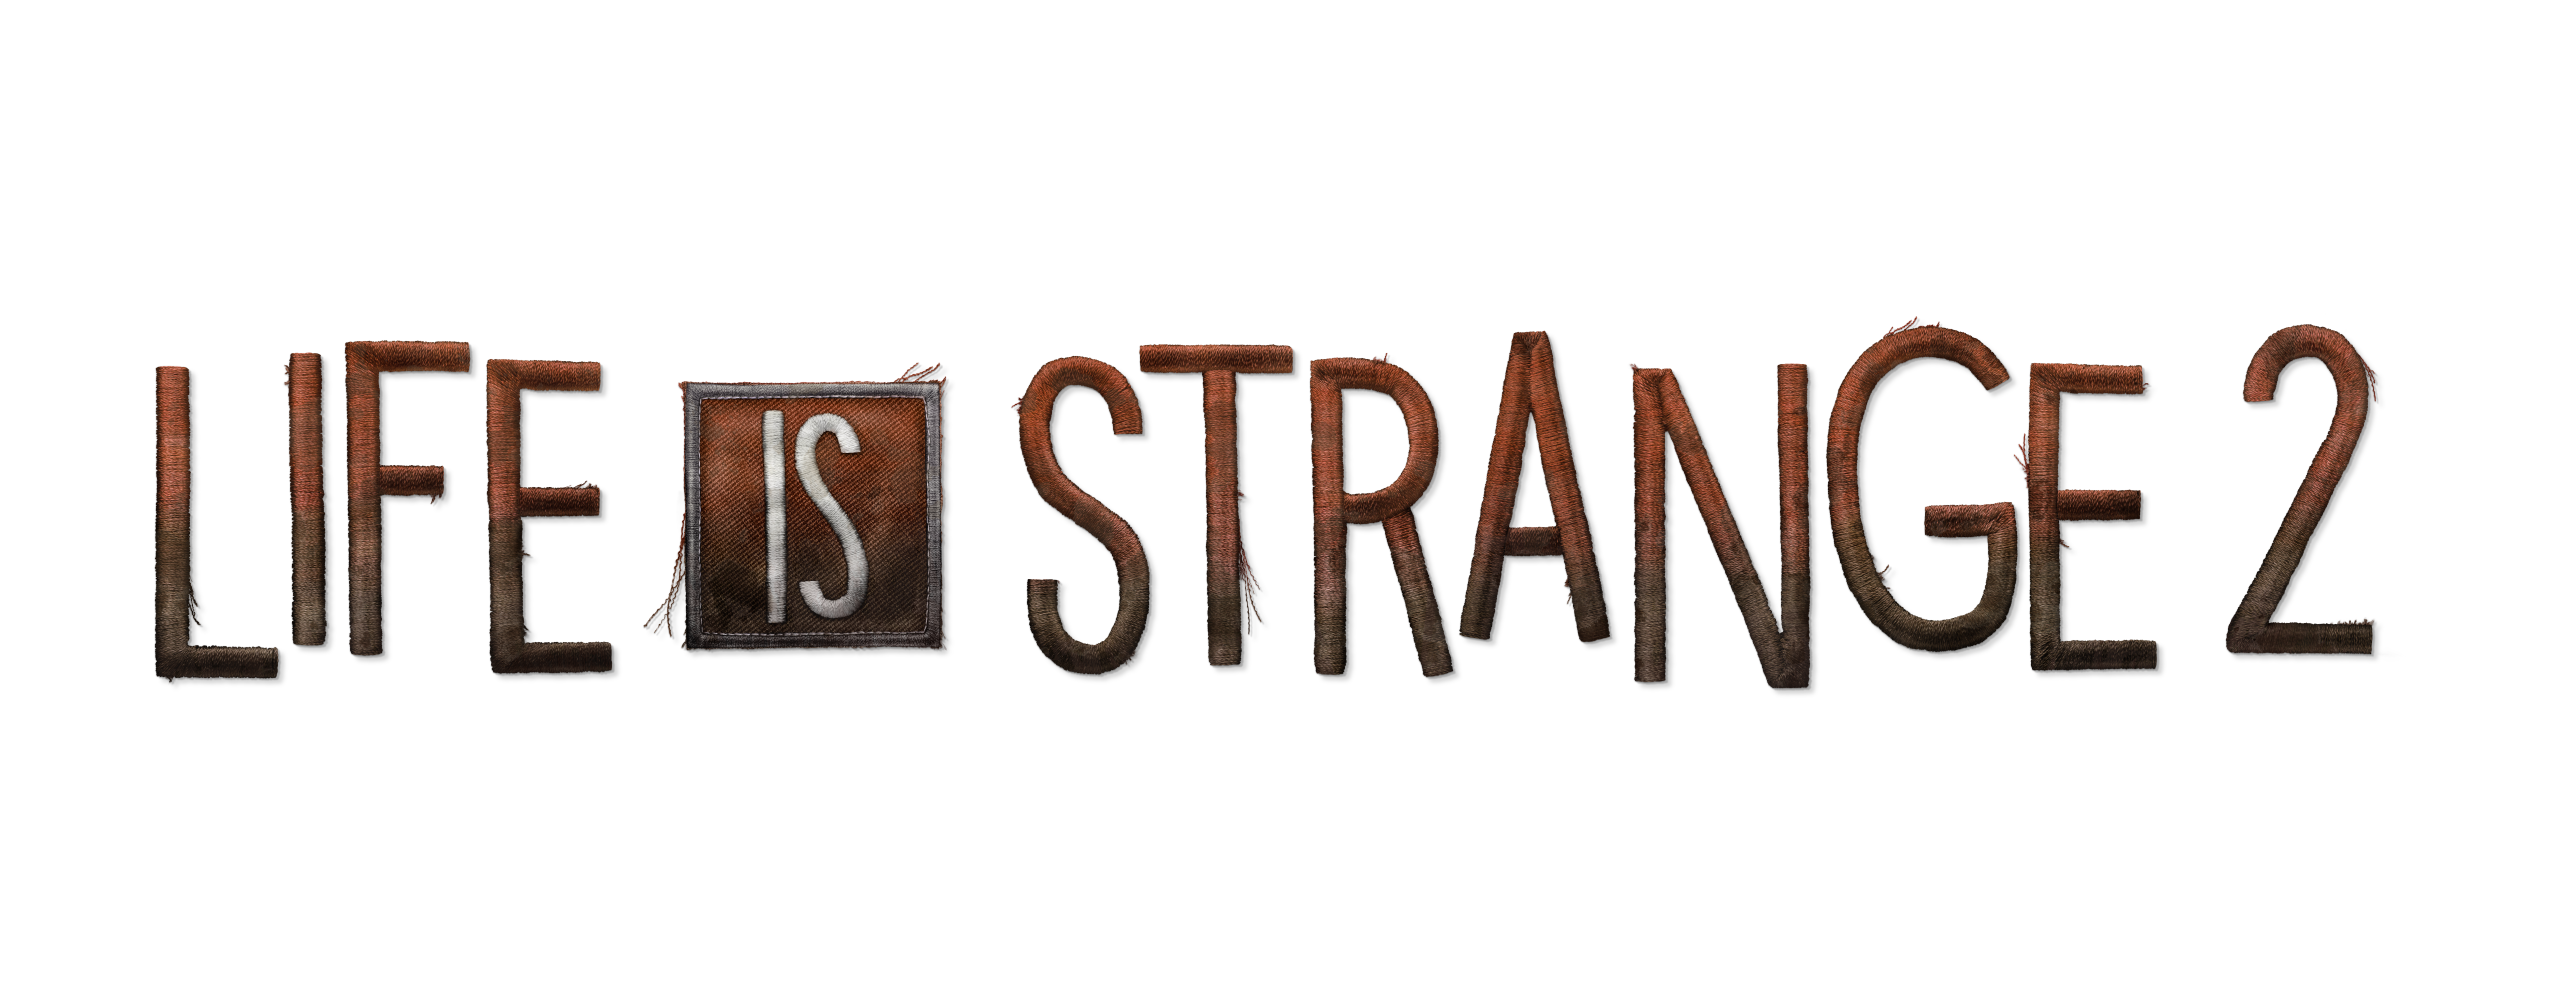 Life is life. Life is Strange 2 лого. Life is Strange 2 название. Life is Strange 2 надпись. Life is Strange 2 эпизод 1 лого.